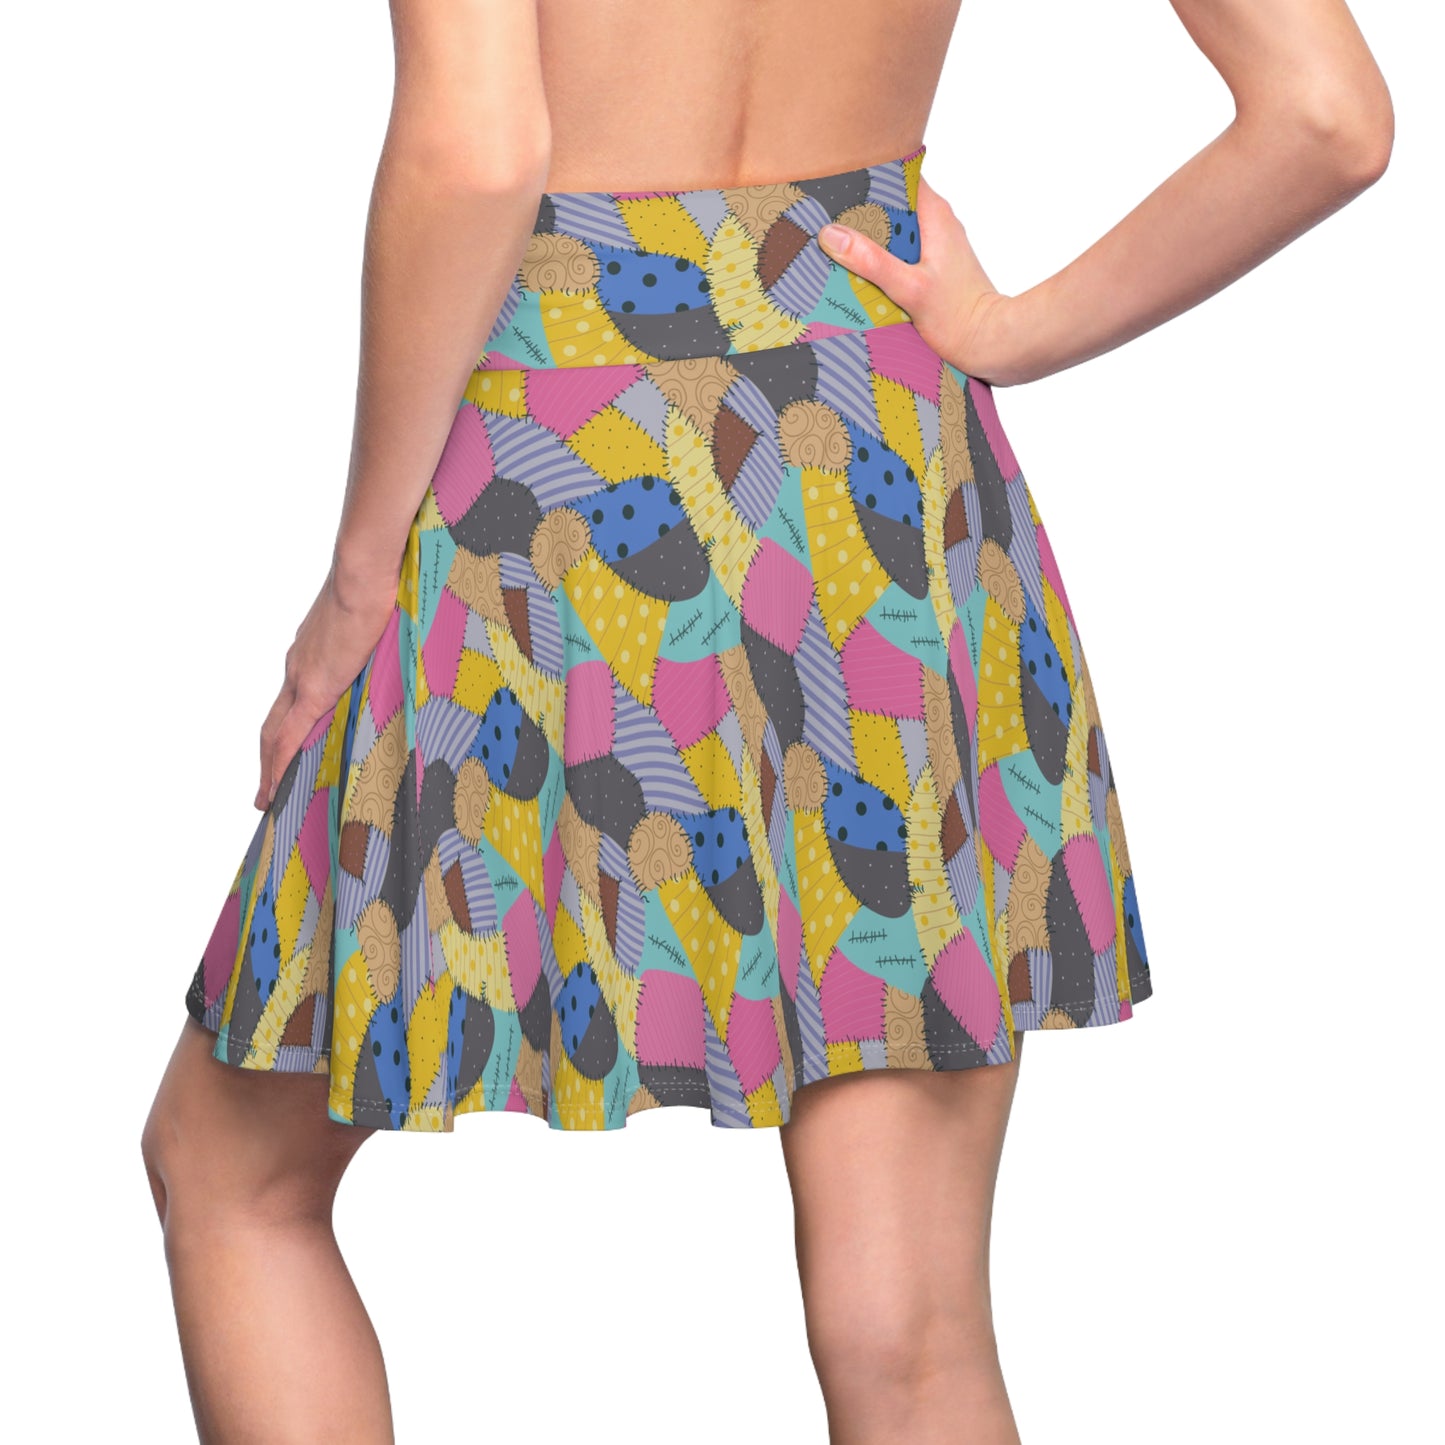 Sally's Dress Women's Skater Skirt